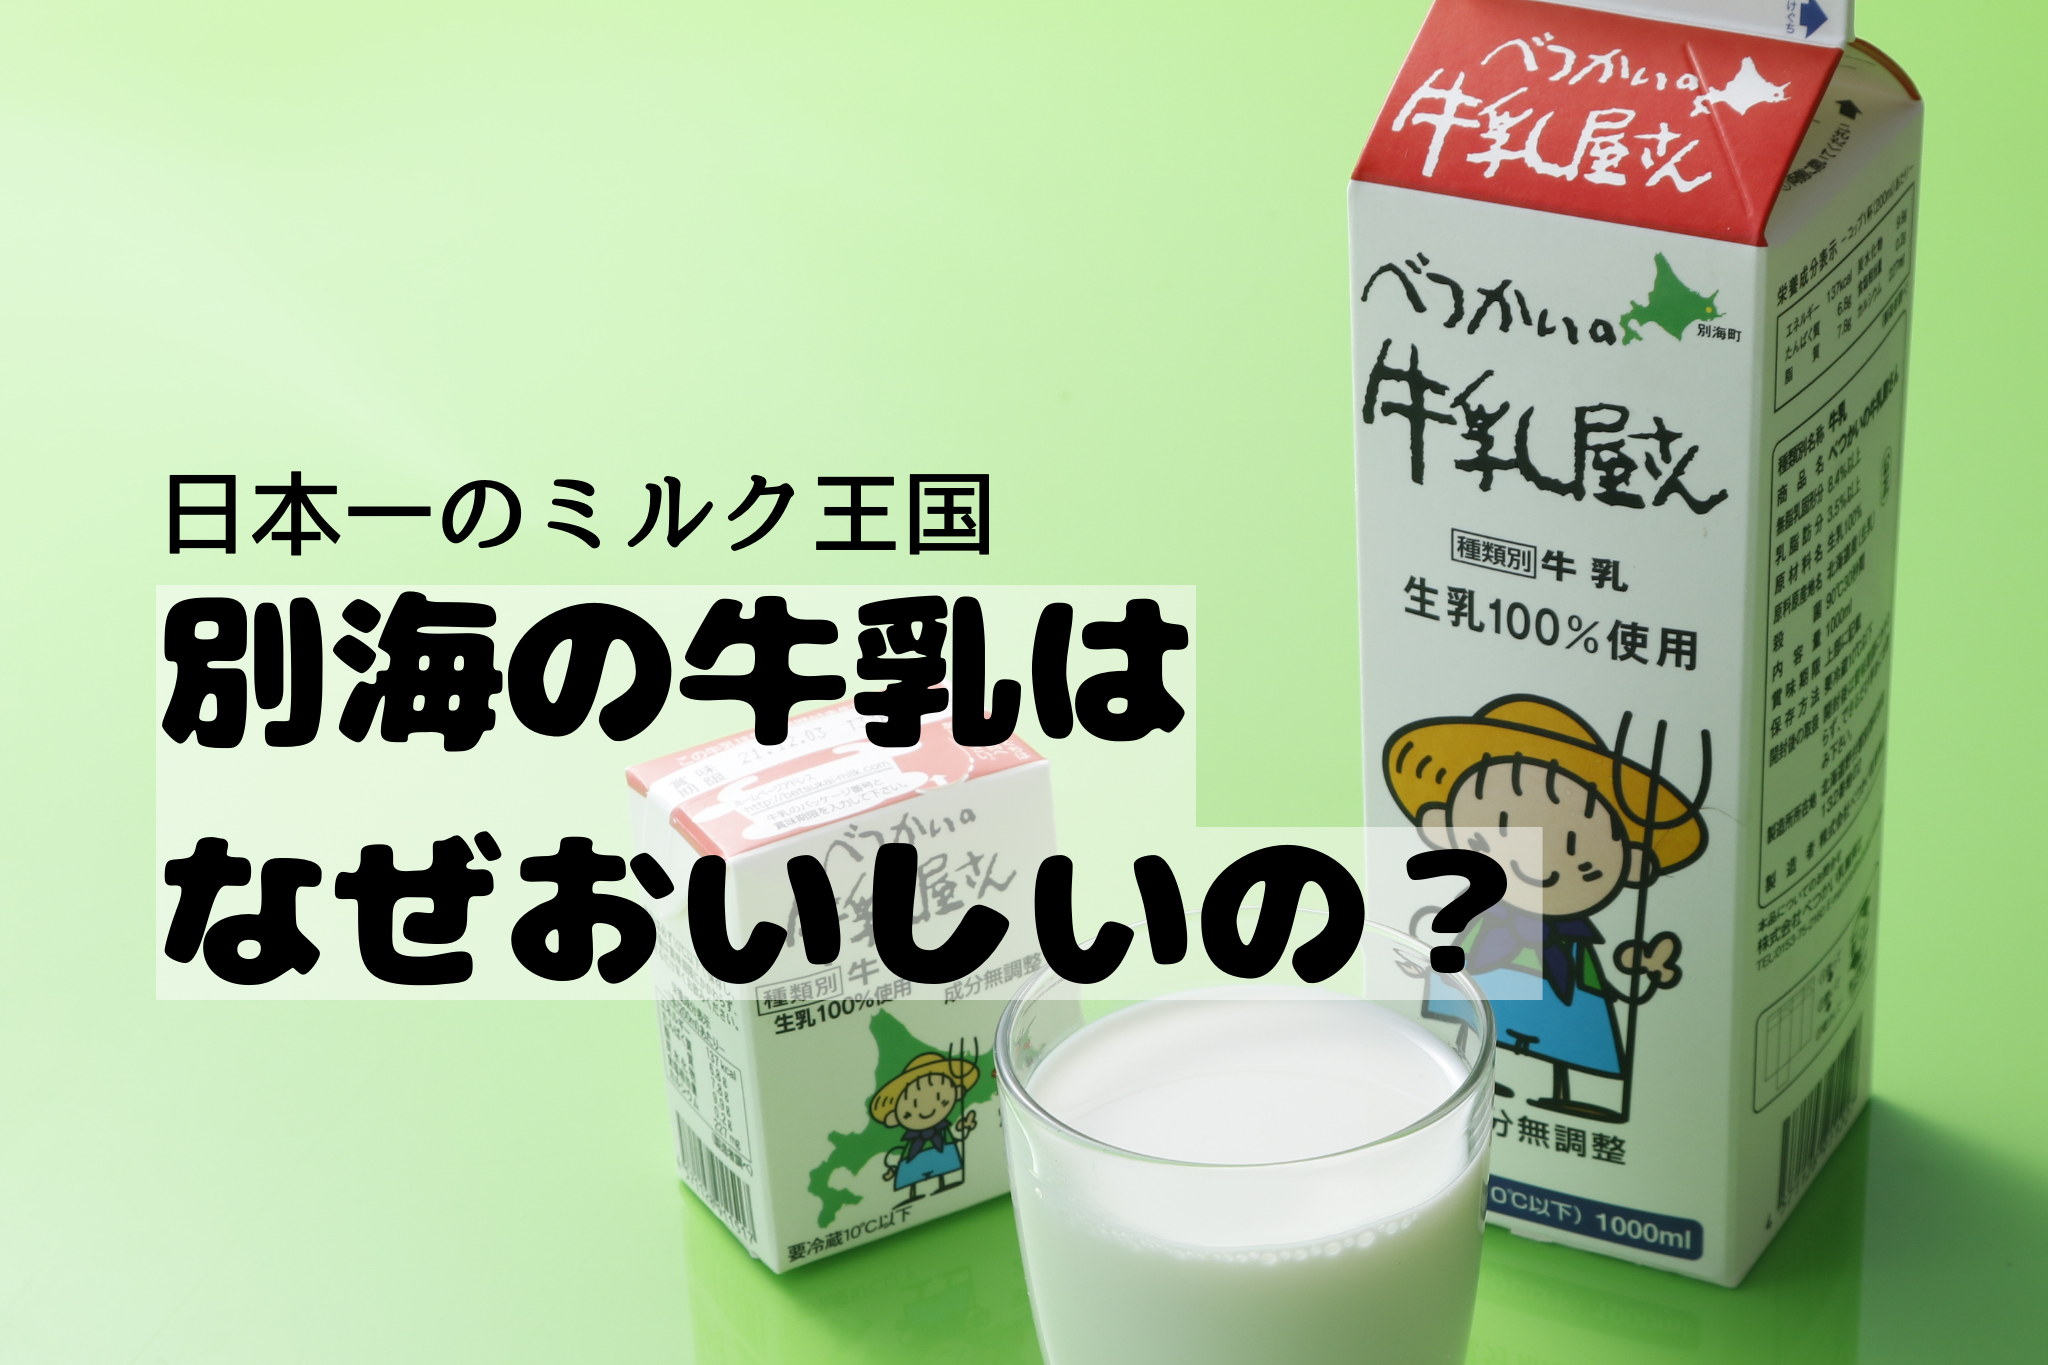 生乳生産量日本一のまち「別海町」。べつかいの牛乳がおいしい理由